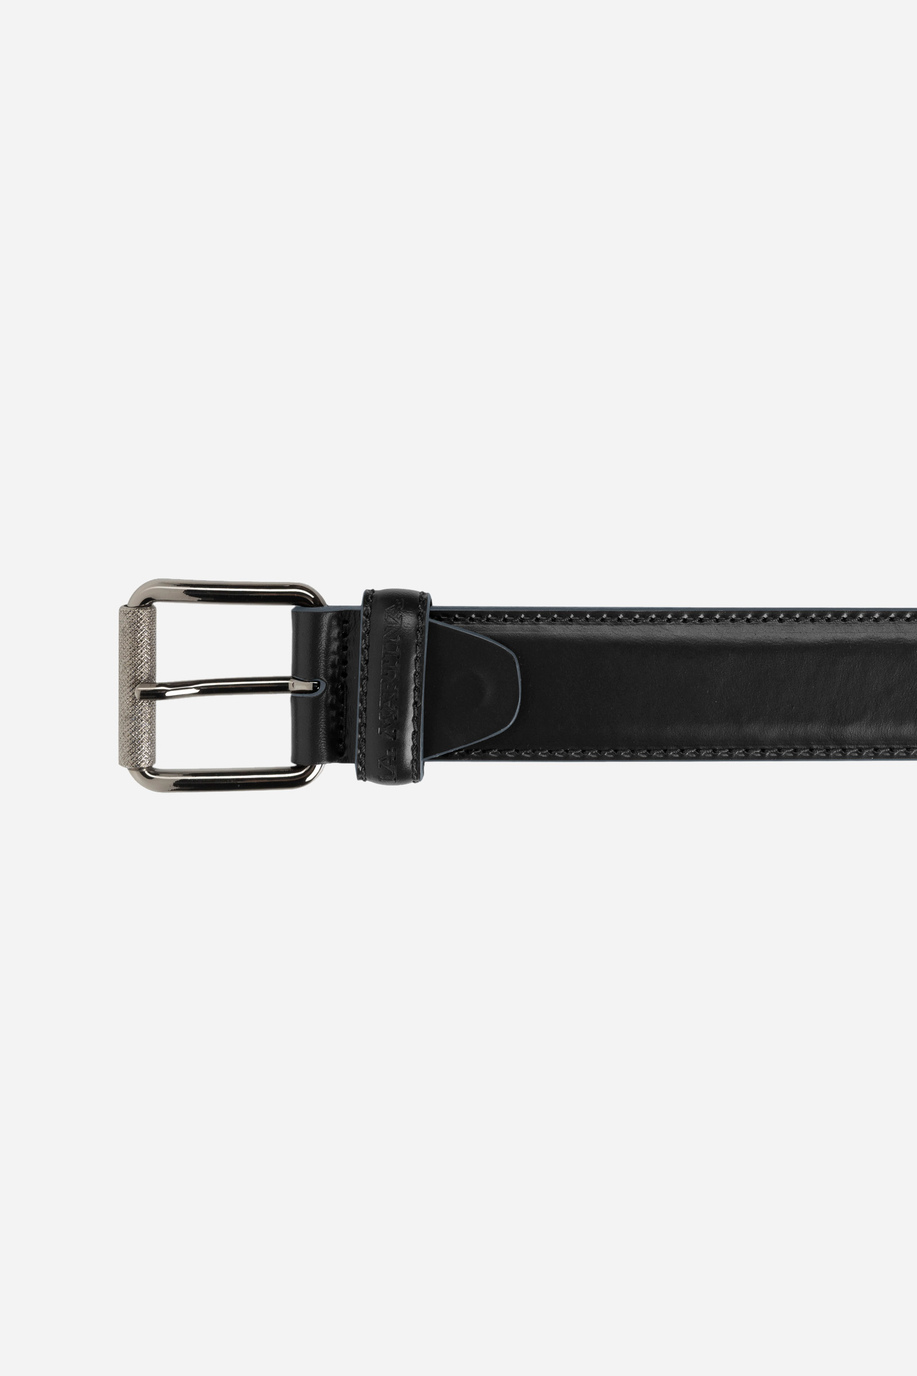 Solid color black leather belt - Belts | La Martina - Official Online Shop